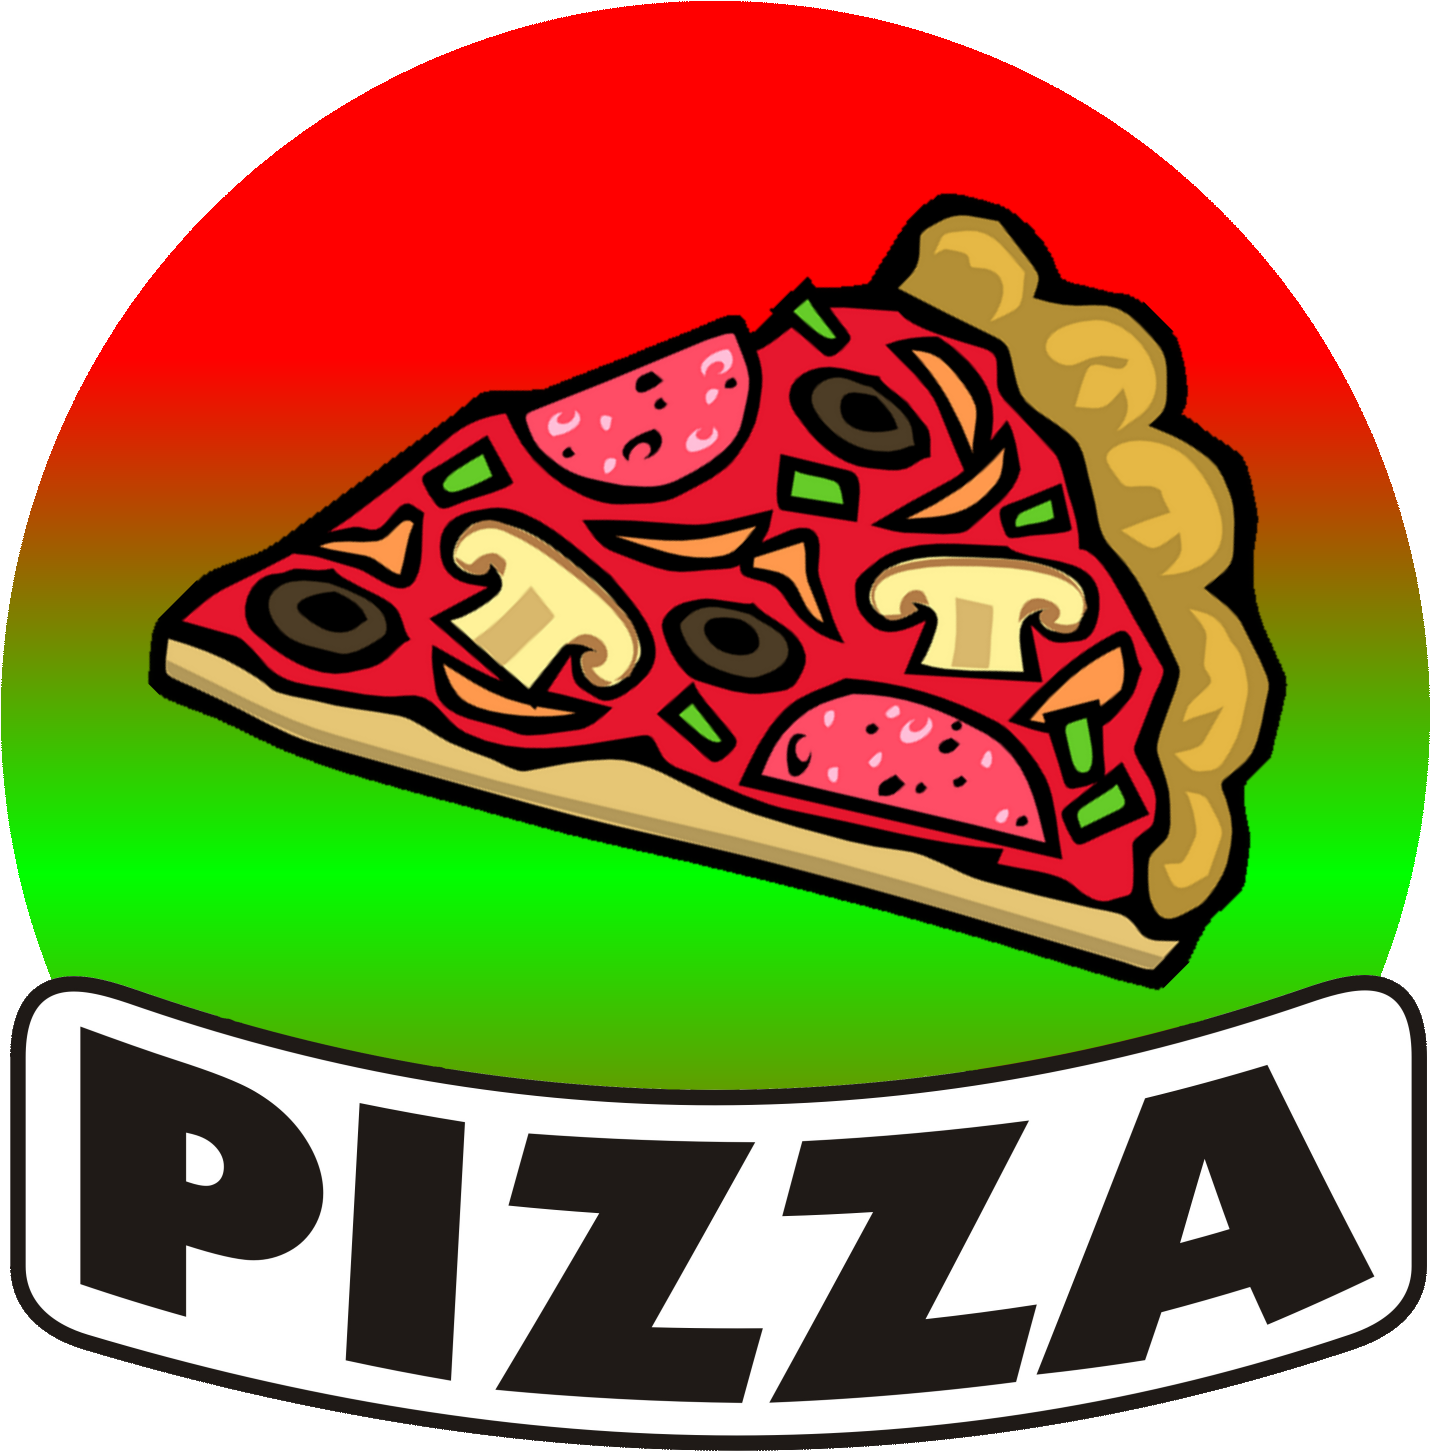 Пиццерия слово. Пицца надпись. Пиццерия надпись. Логотип пиццерии. Пицца иллюстрация.